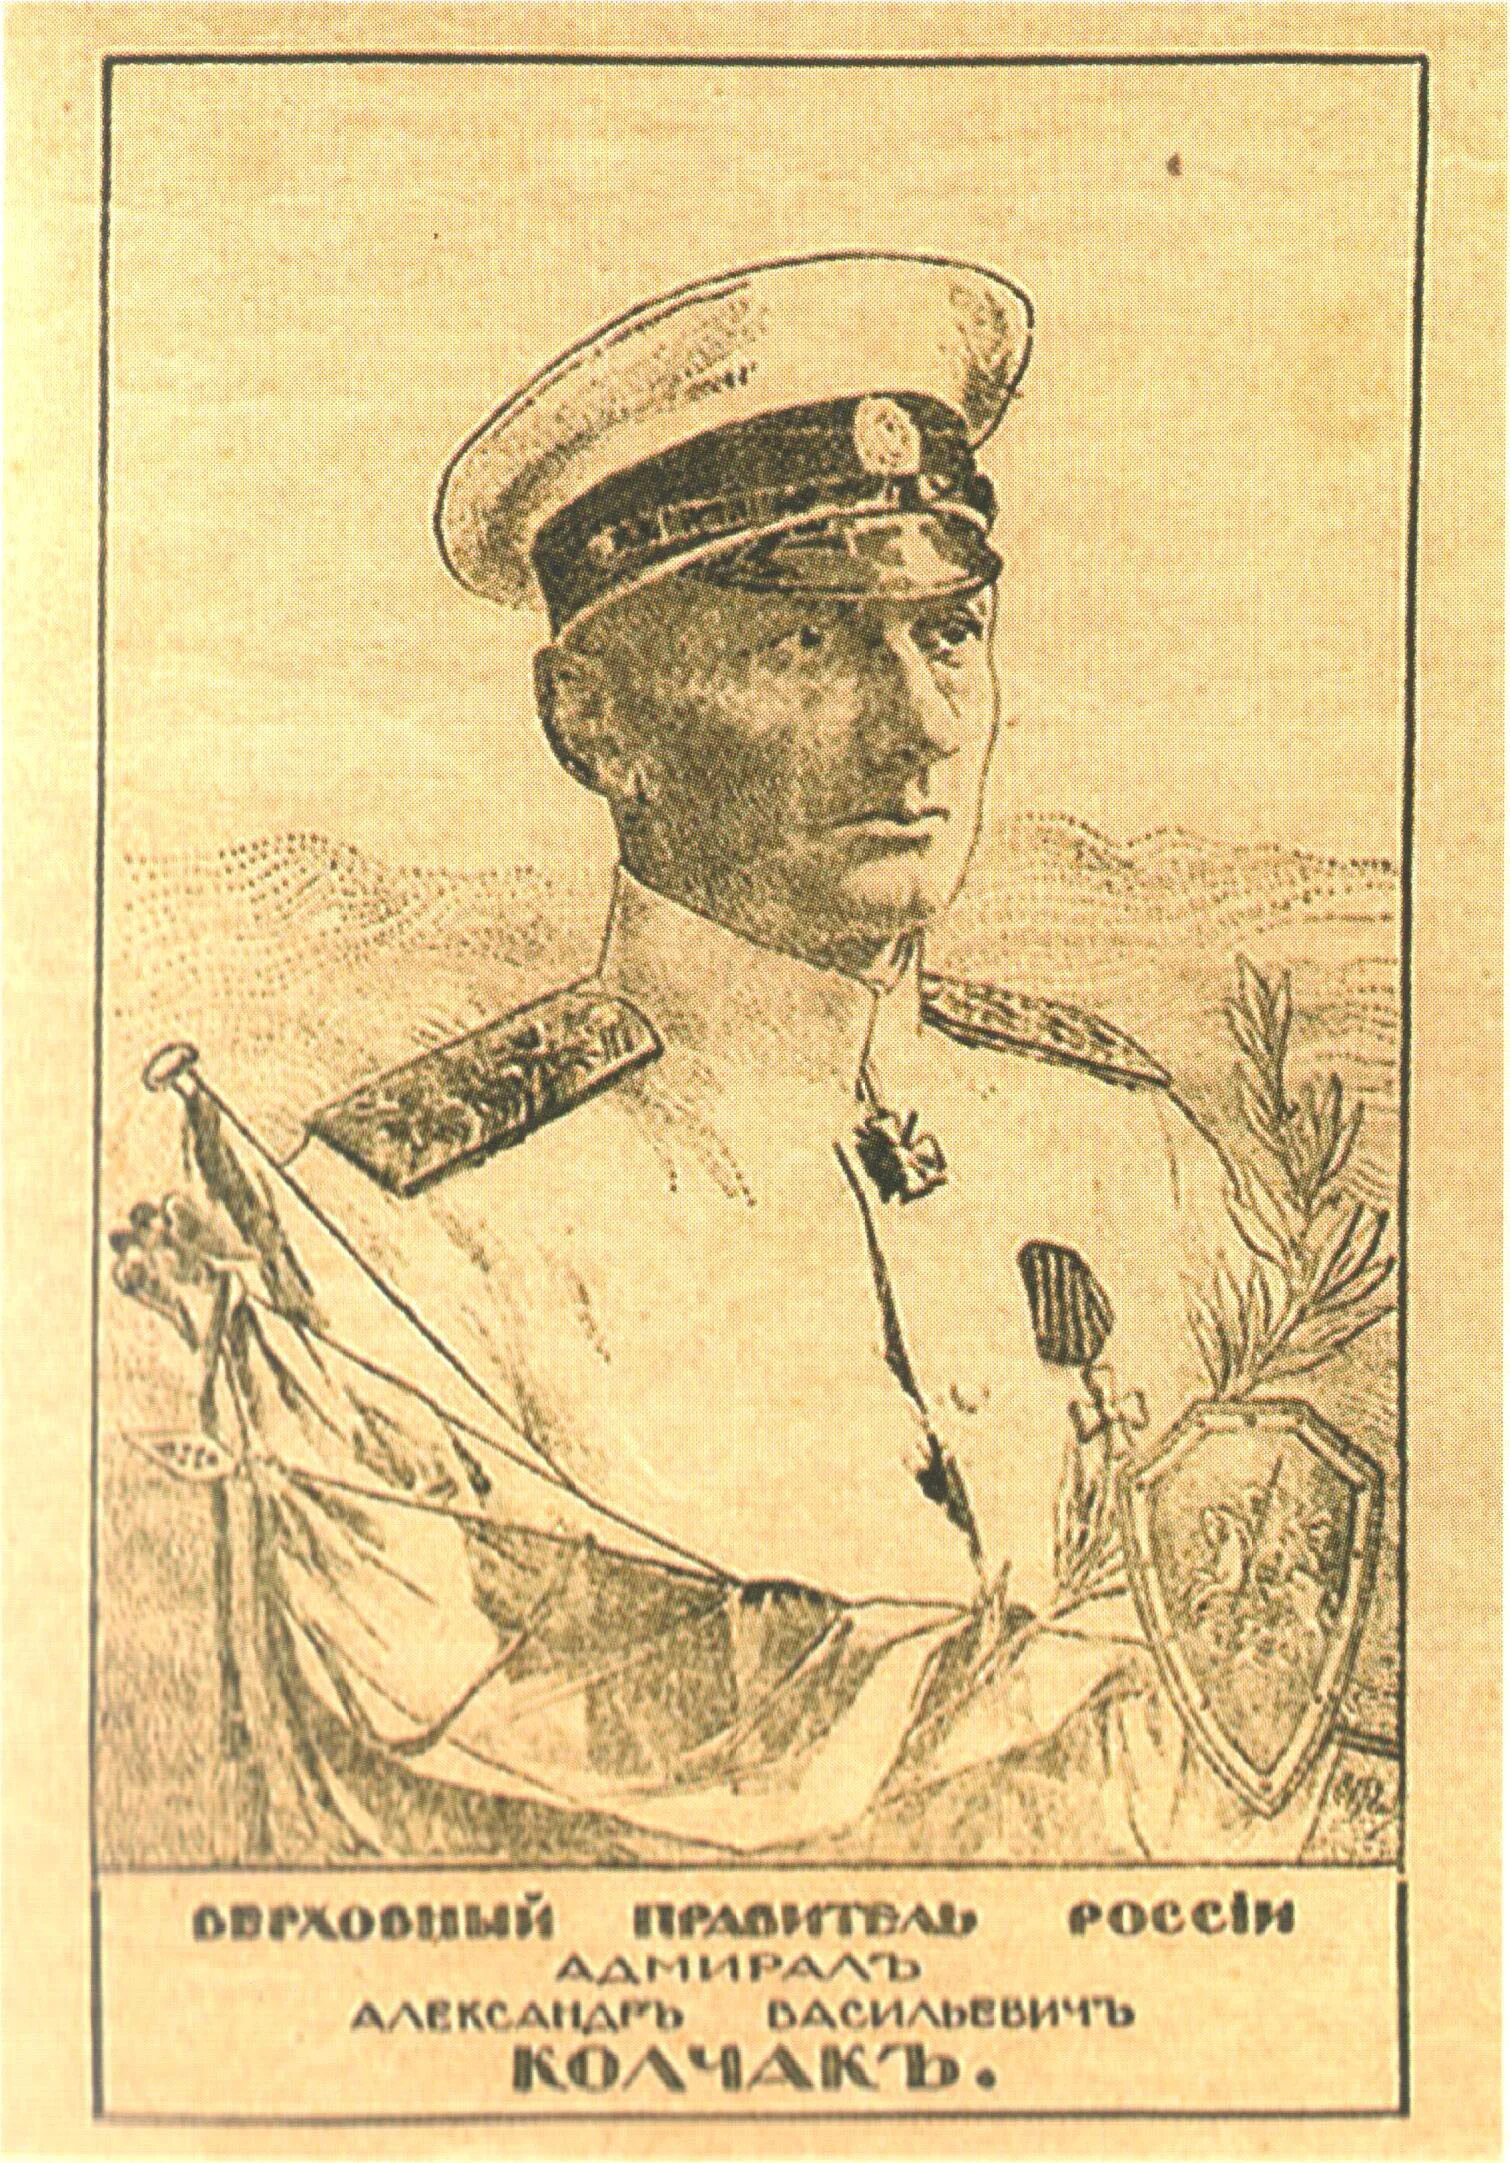 Адмирал Колчак портрет. Колчак Верховный правитель. Флаг Адмирала Колчака. Адмирал Колчак арт.